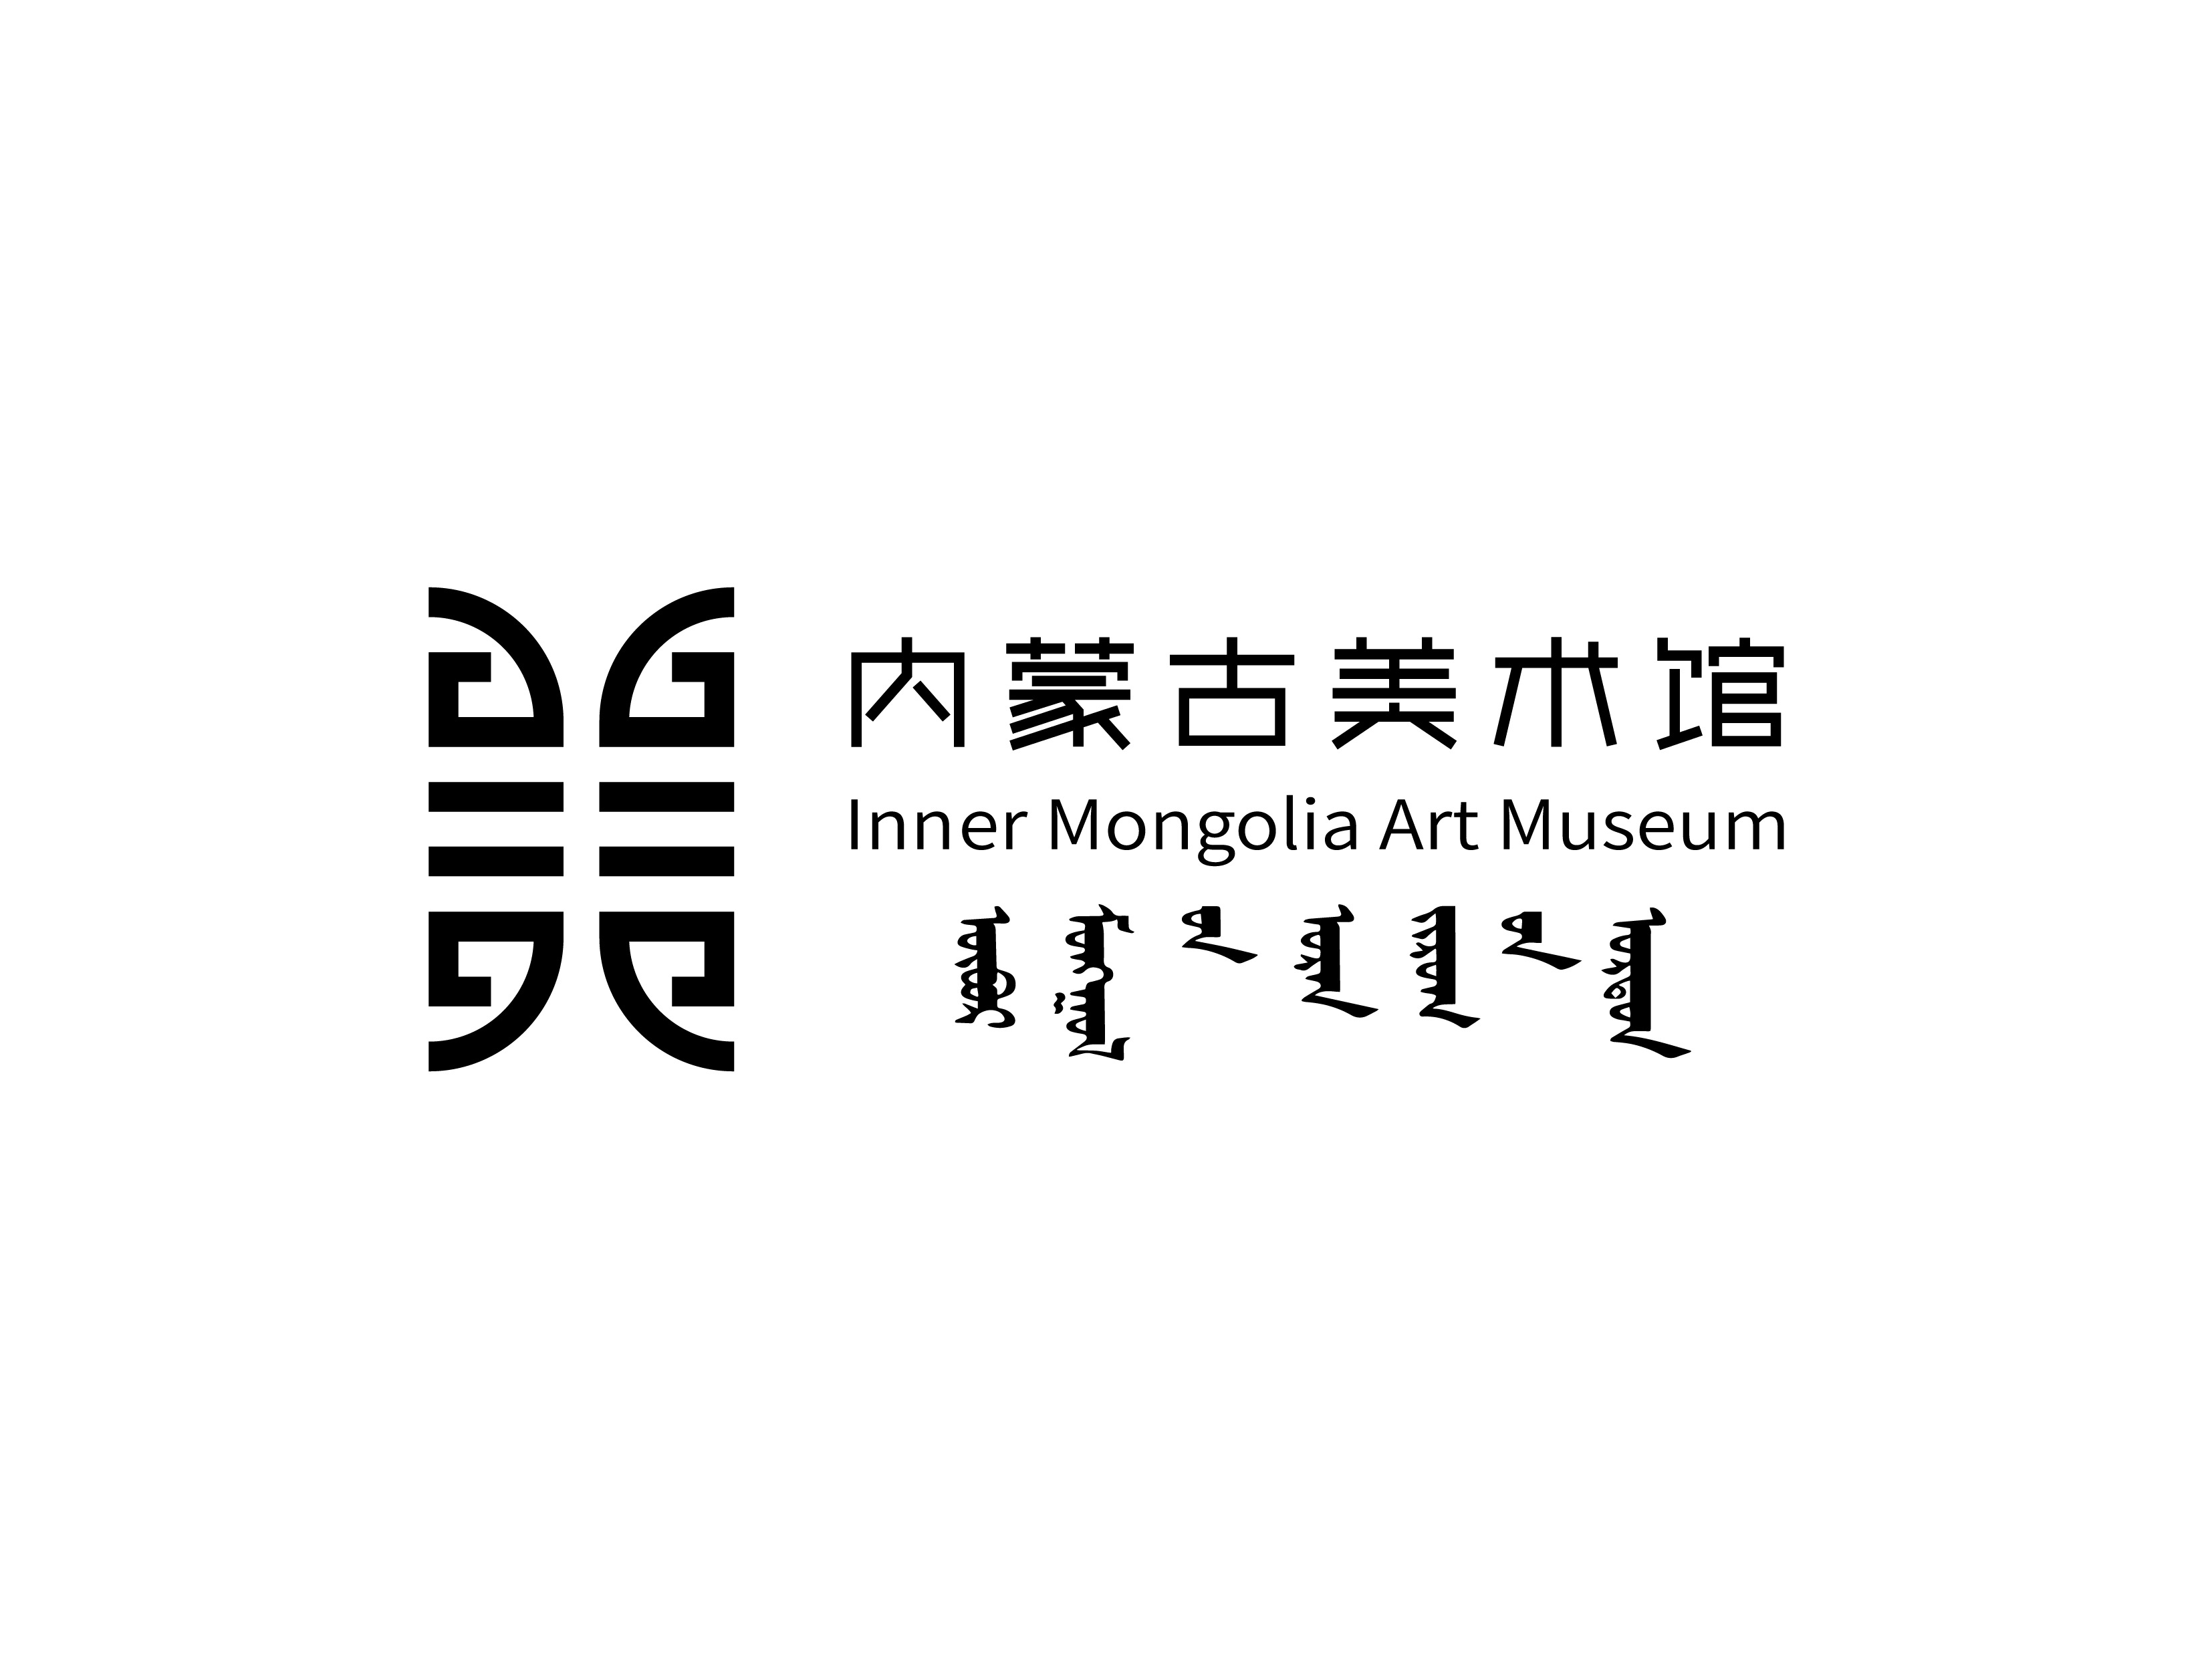 内蒙古美术馆logo图片